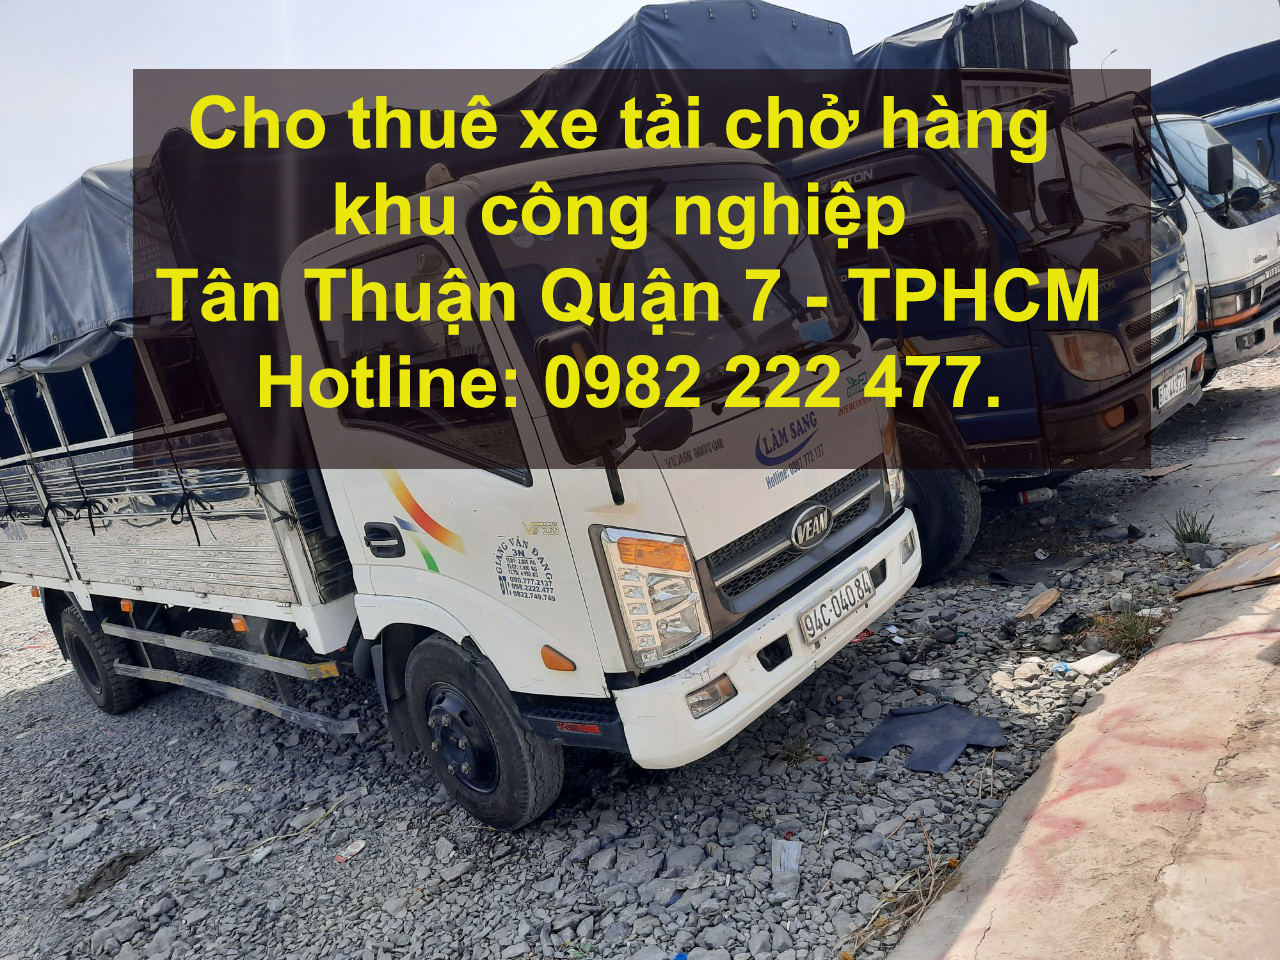 Cho thuê xe tải chở hàng khu công nghiệp Linh Trung Quận Thủ Đức – TPHCM